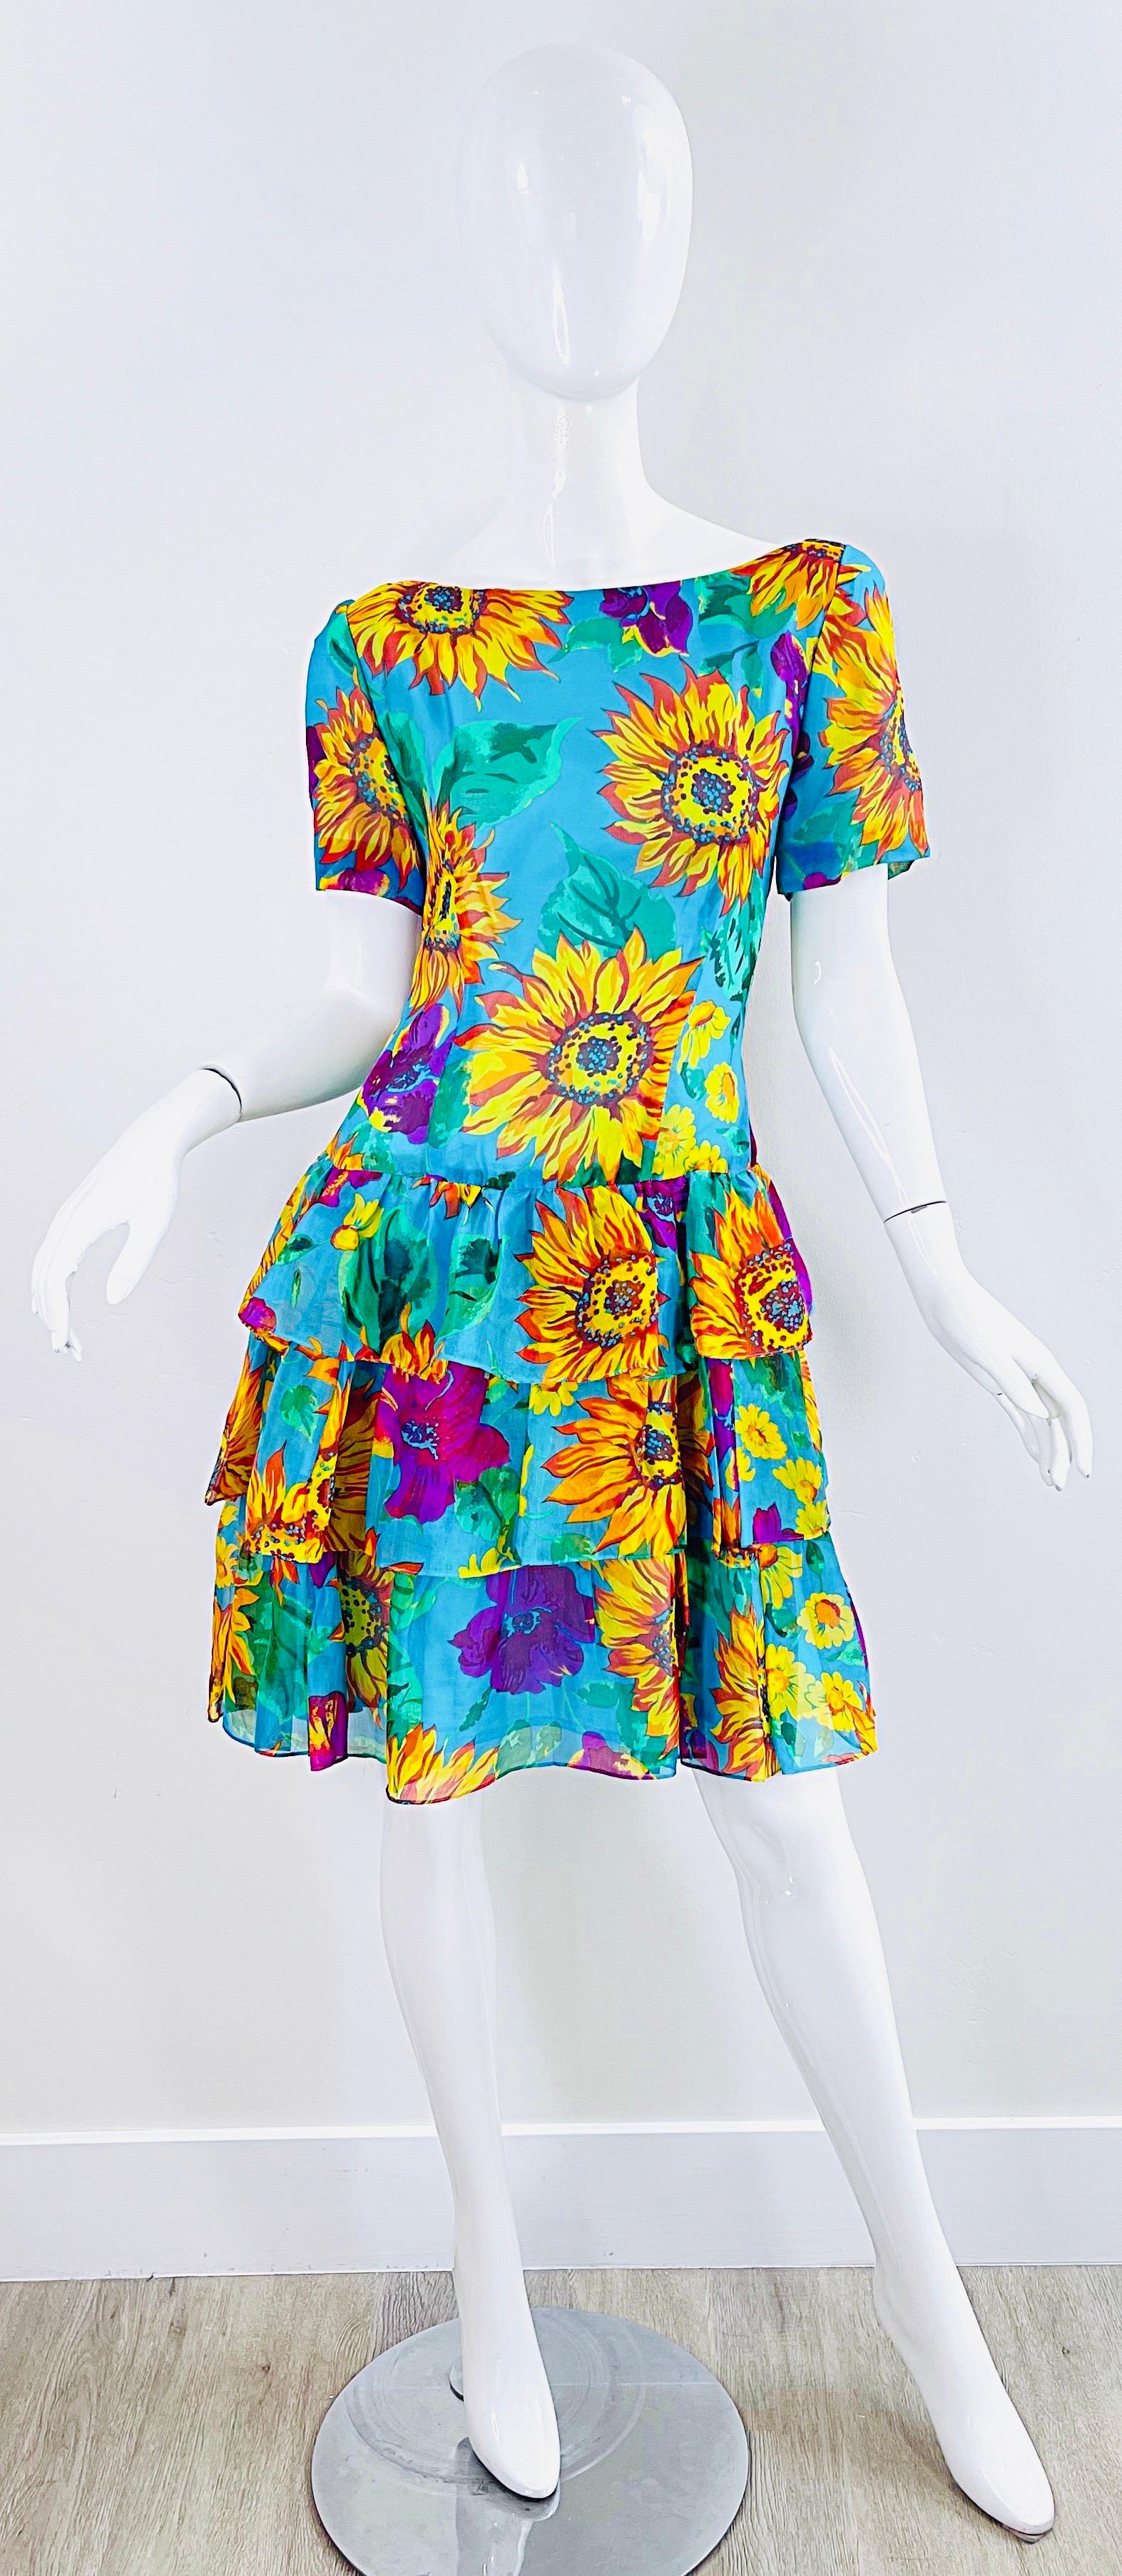 Schickes kurzärmeliges Kleid aus Seidenchiffon mit Sonnenblumen- und Hibiskusdruck aus den späten 80ern ! Mit tailliertem Mieder und abgestuftem Rüschenrock. Verdeckter Reißverschluss auf der Rückseite mit Haken- und Ösenverschluss. 
Toll mit Gürtel